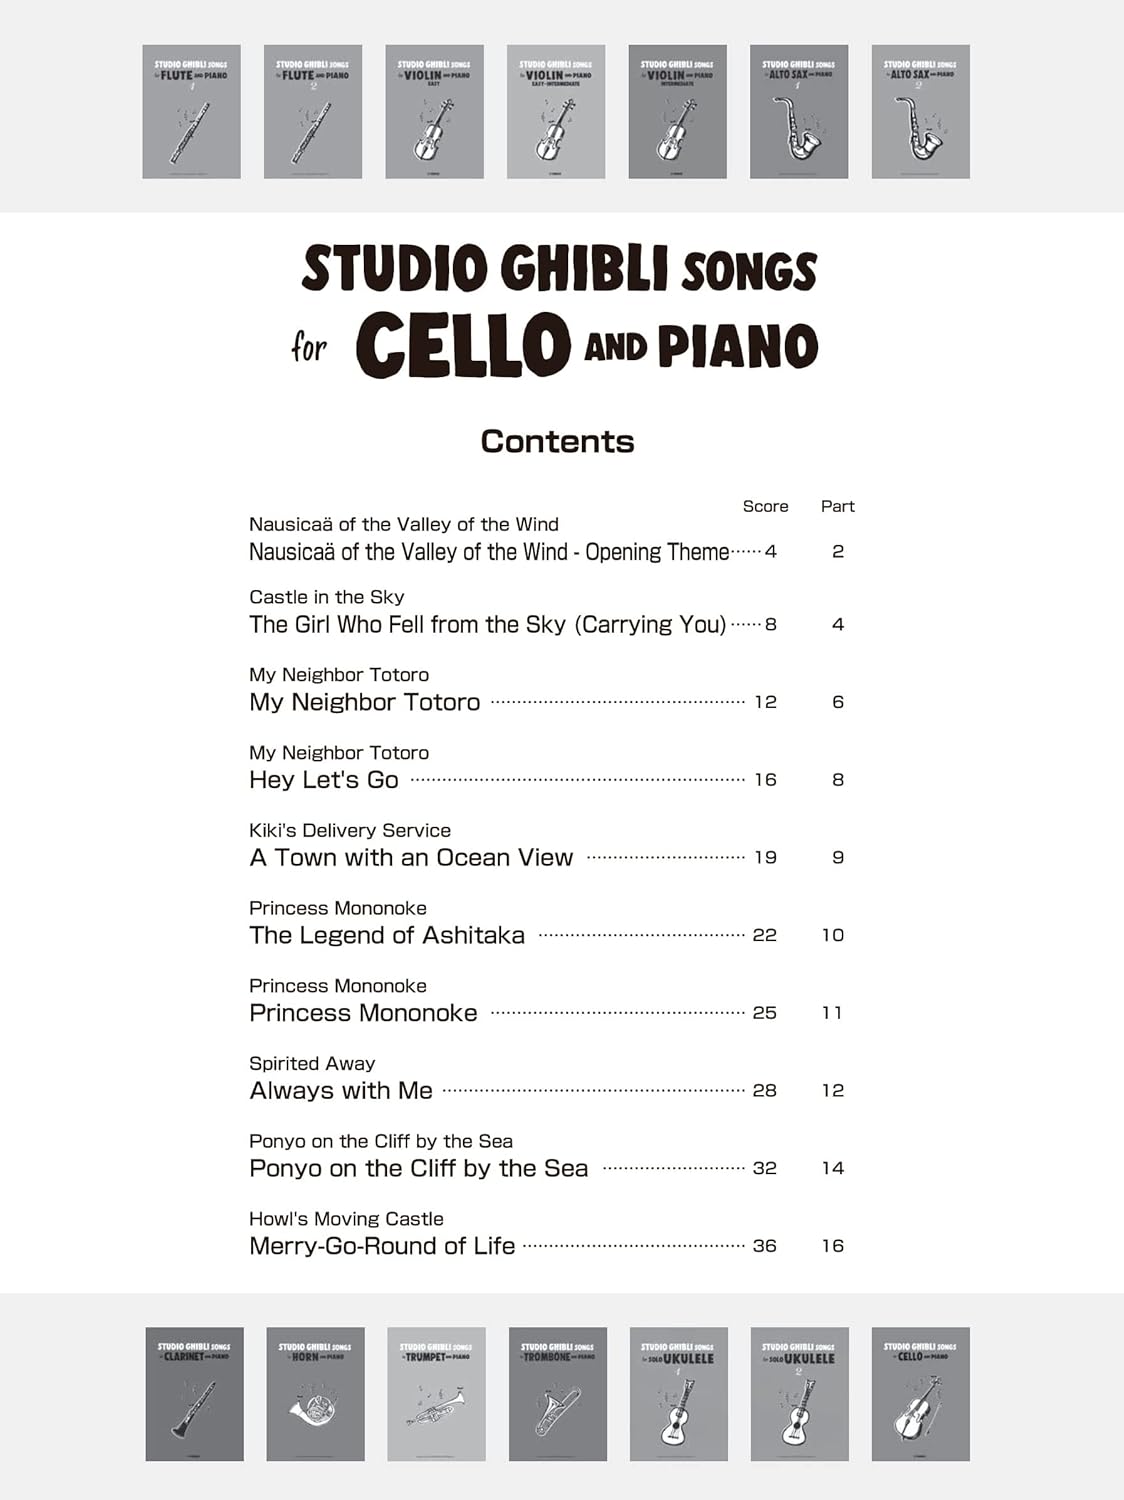 Studio Ghibli Songs for Cello & Piano